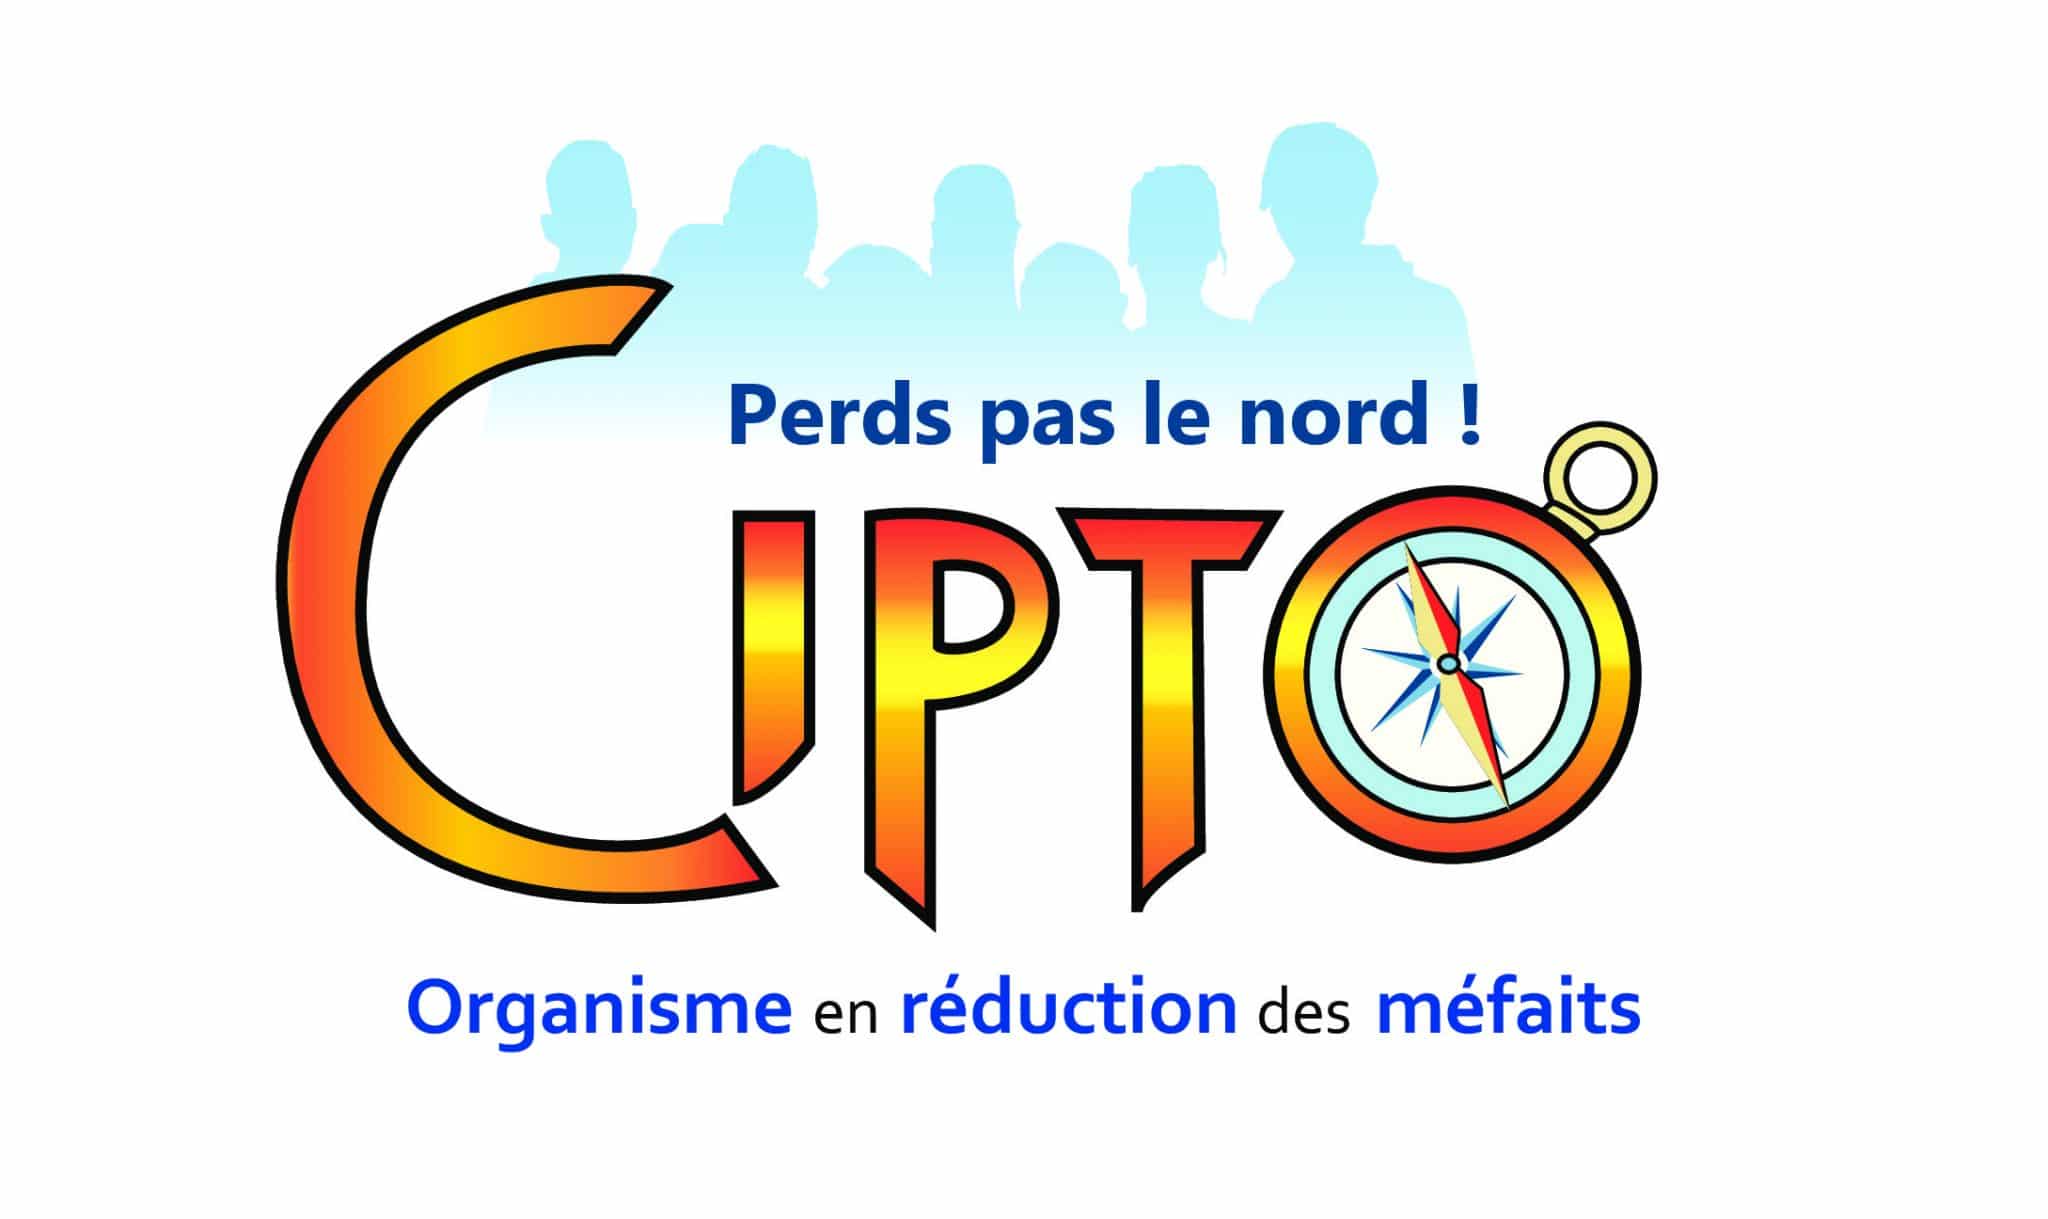 CIPTO logo